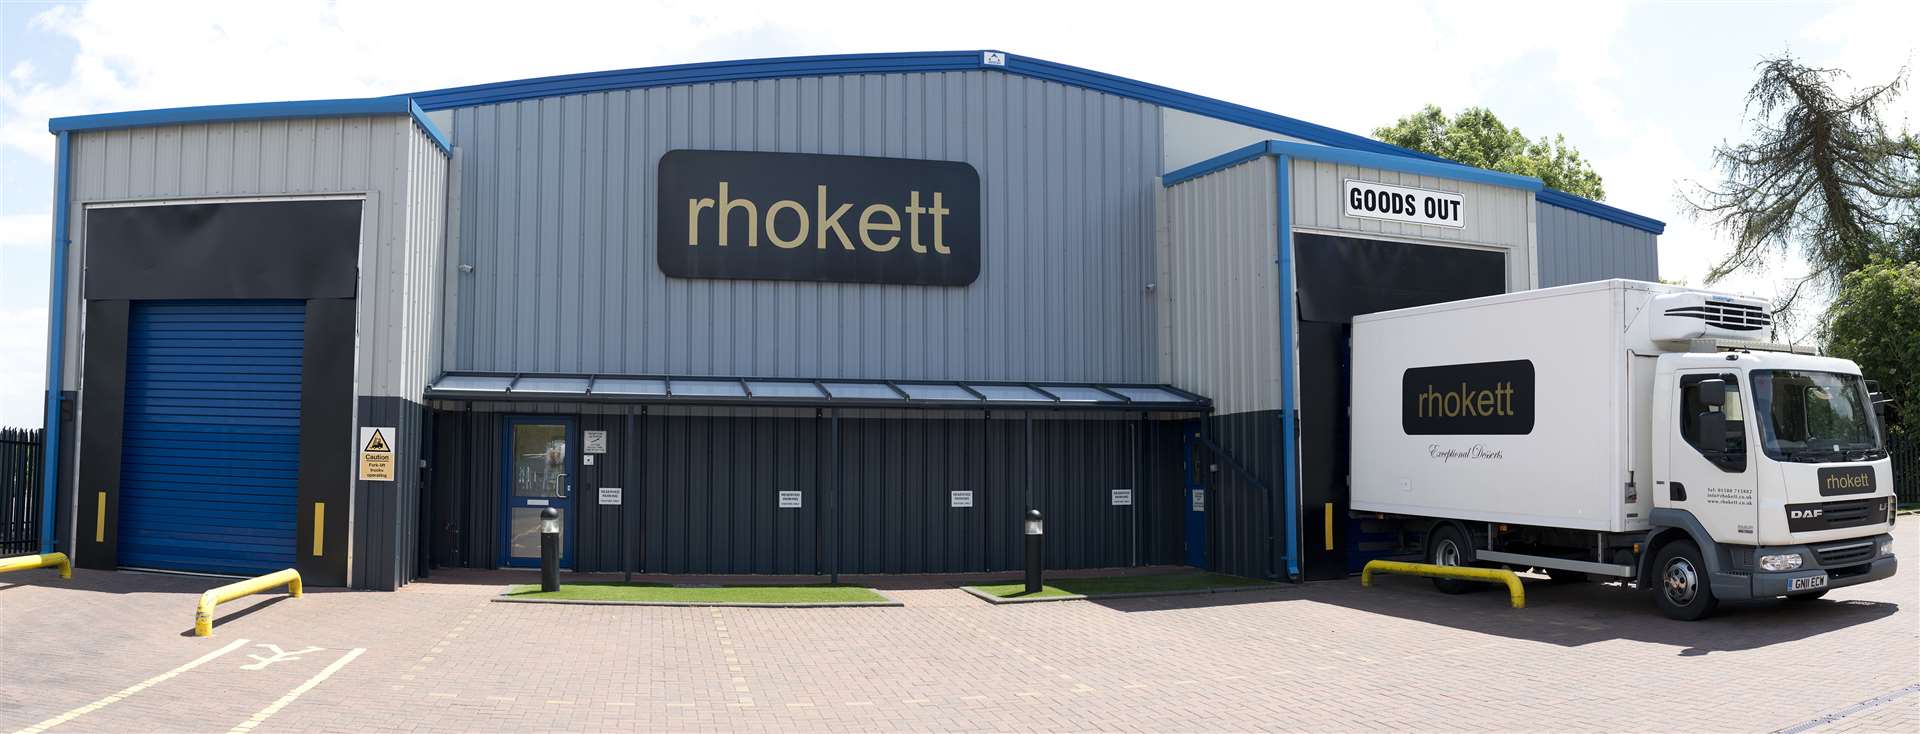 Rhokett opened a new factory in Hawkhurst last year